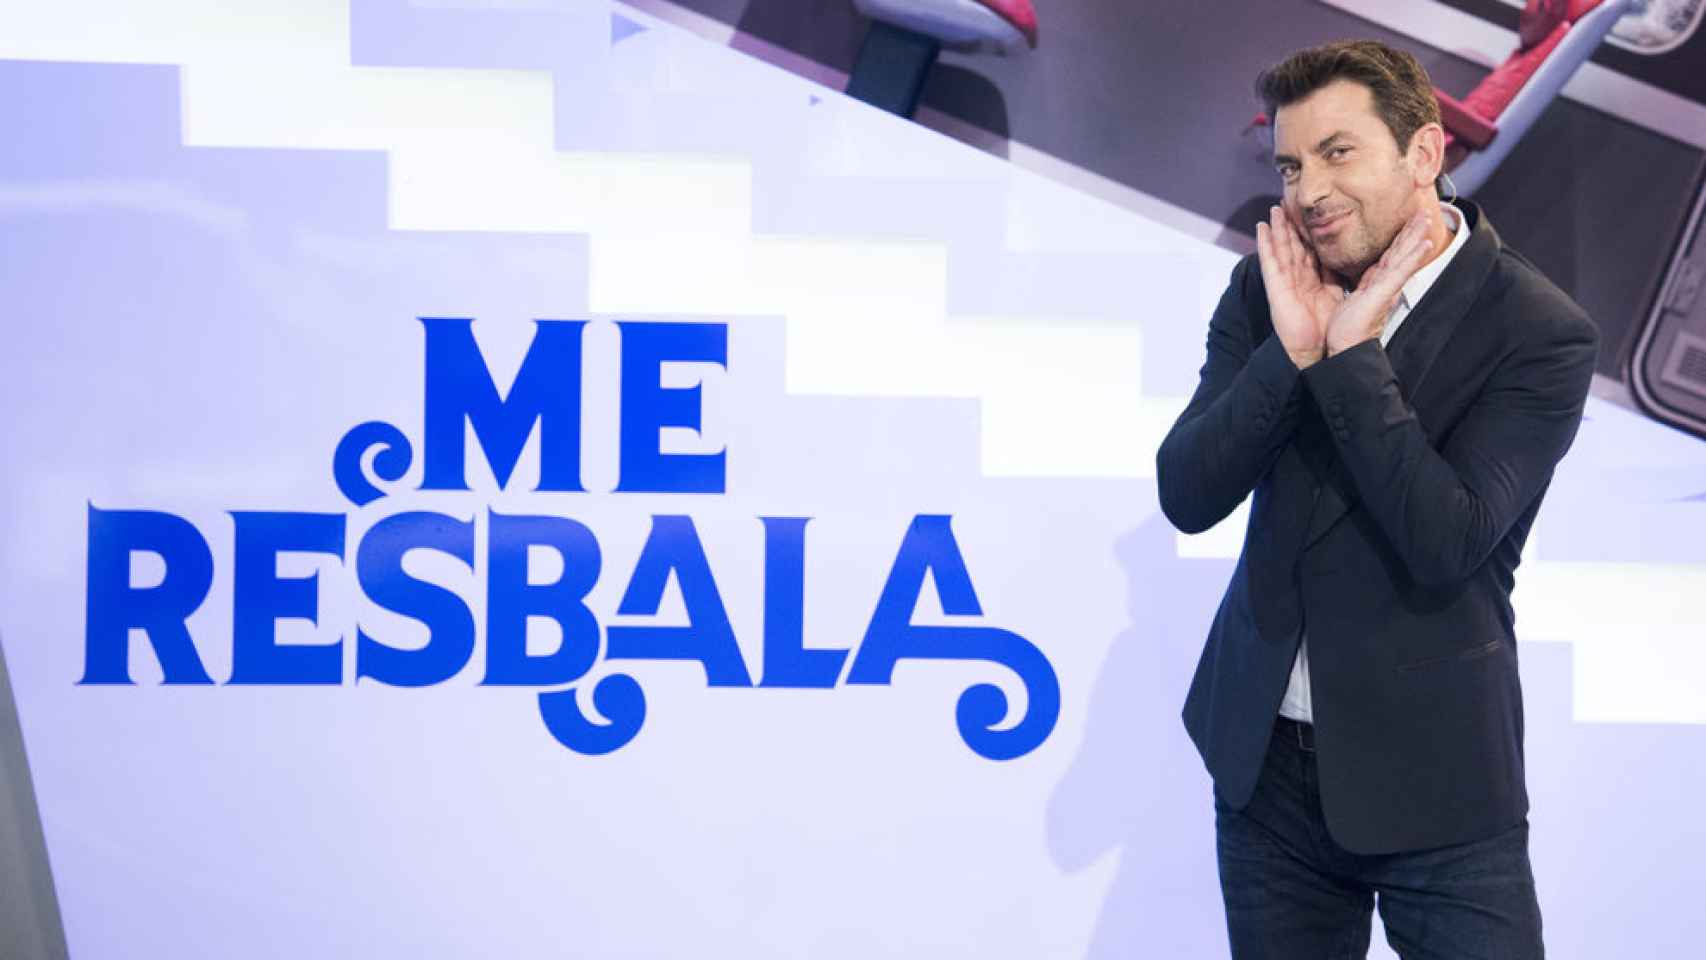 Arturo Valls en 'Me resbala' (Antena 3)